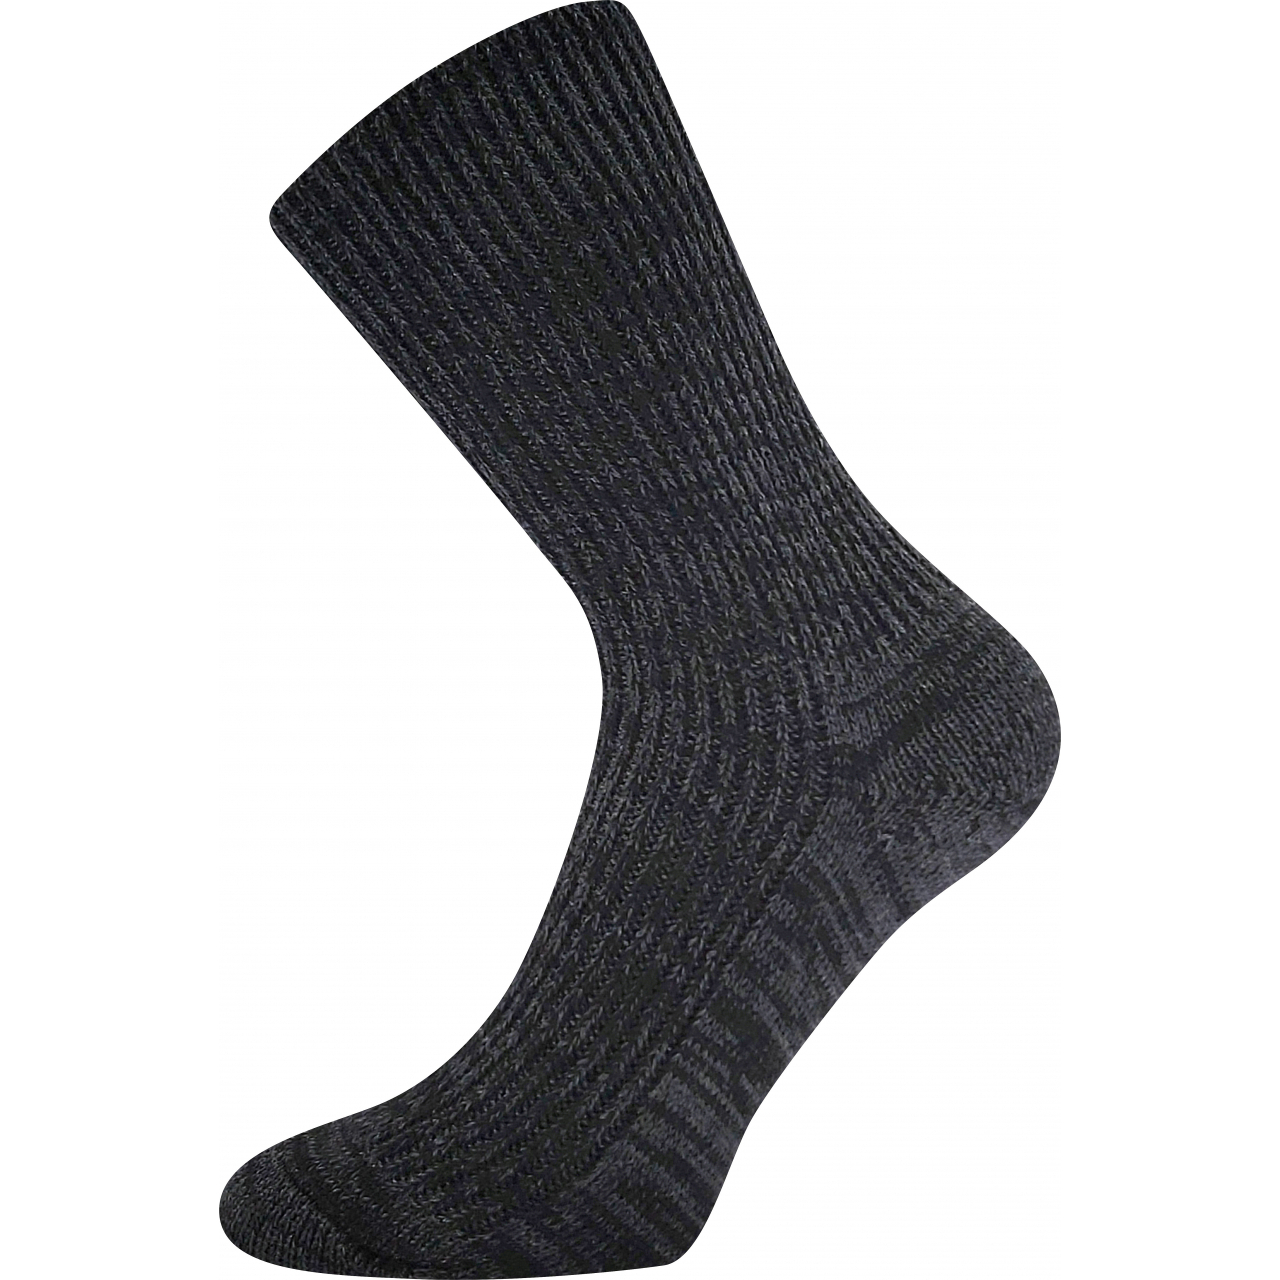 Ponožky unisex zimní Boma Říp - černé, 35-37